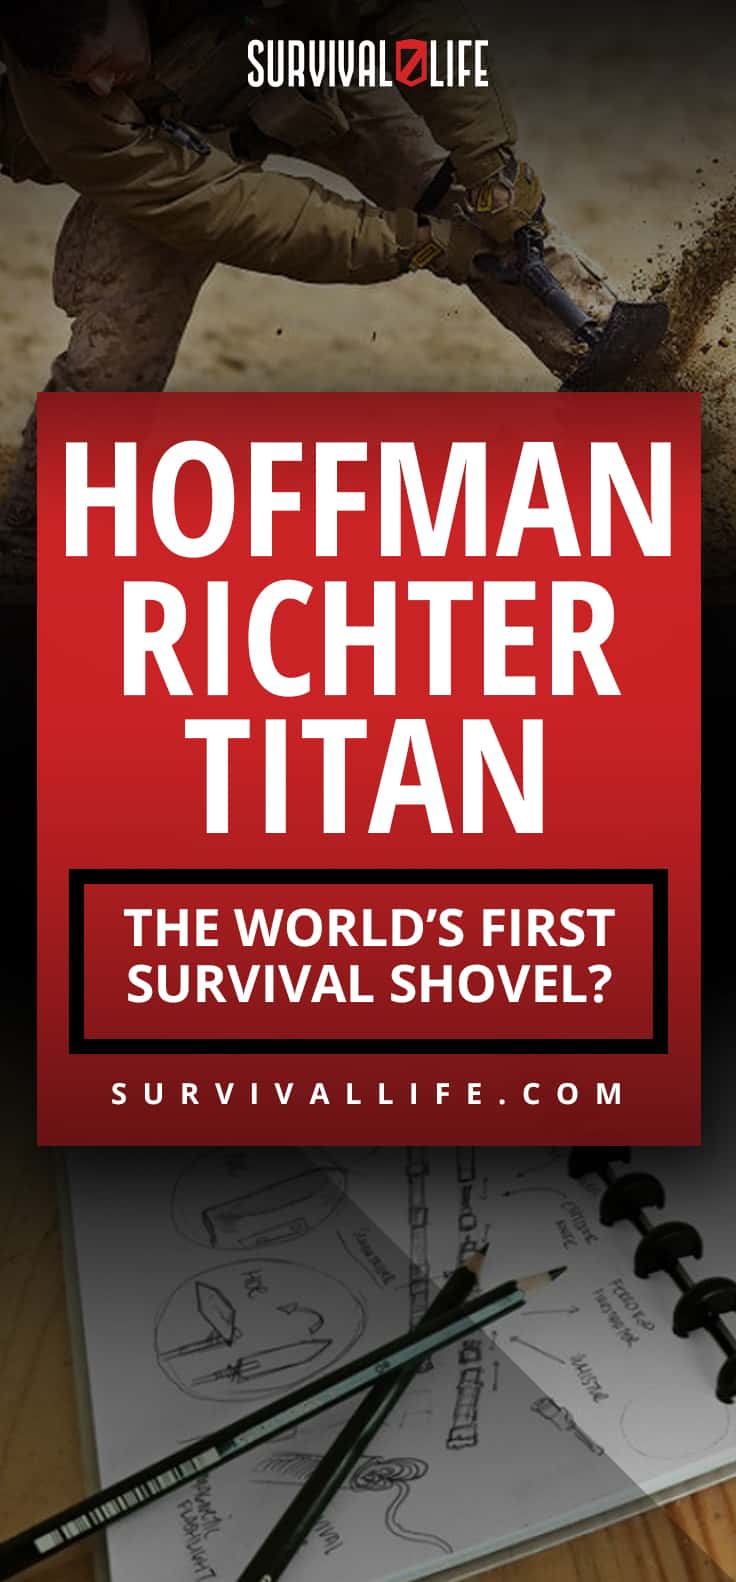 Hoffman Richter TITAN- The world's First Survival Shovel?